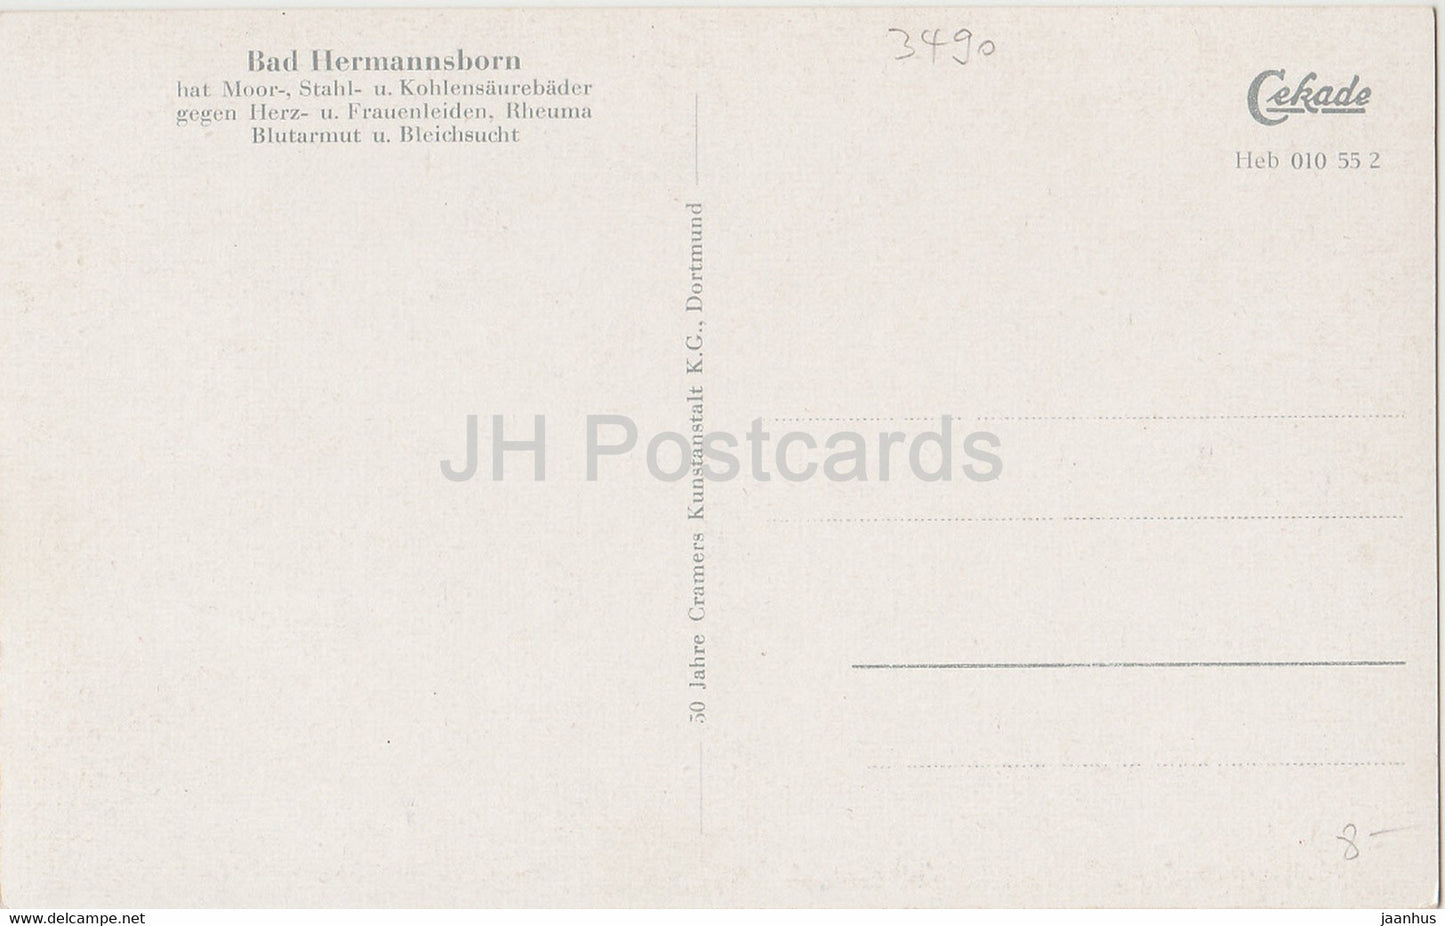 Bad Hermannsborn - Partie am Schwanenteich - alte Postkarte - 1957 - Deutschland - unbenutzt